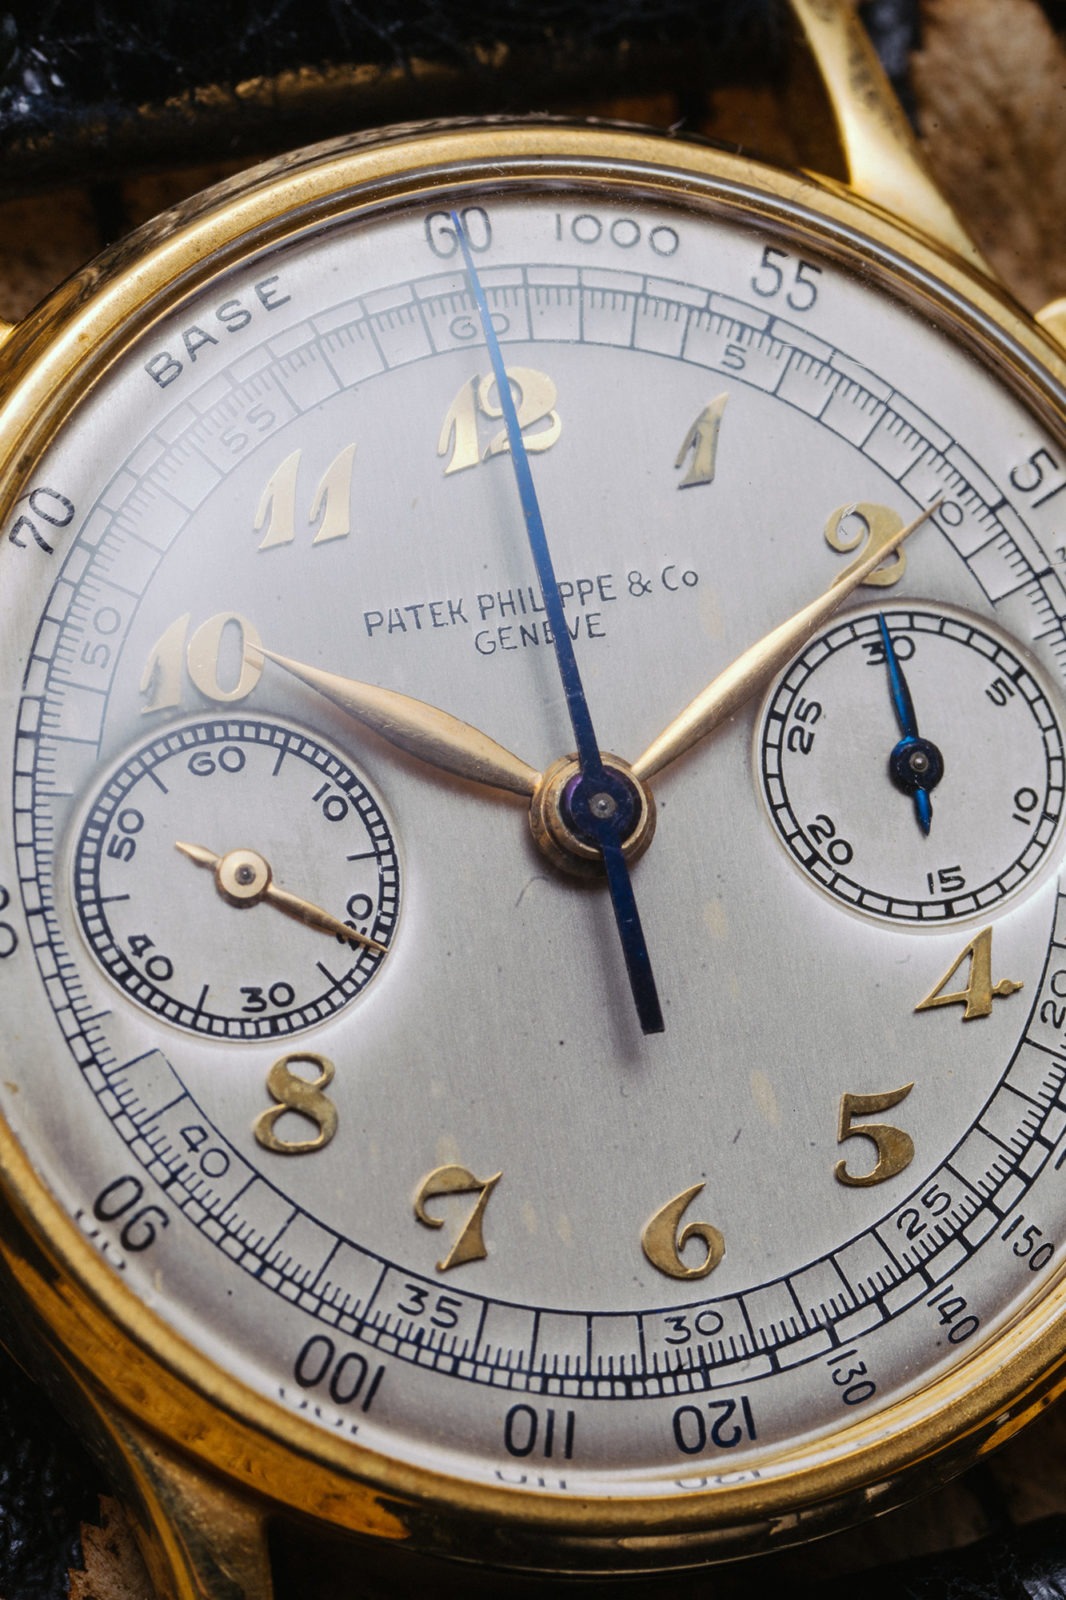 Patek Philippe chronographe ref. 130 - Aguttes vente de montres de collection du jeudi 10 décembre